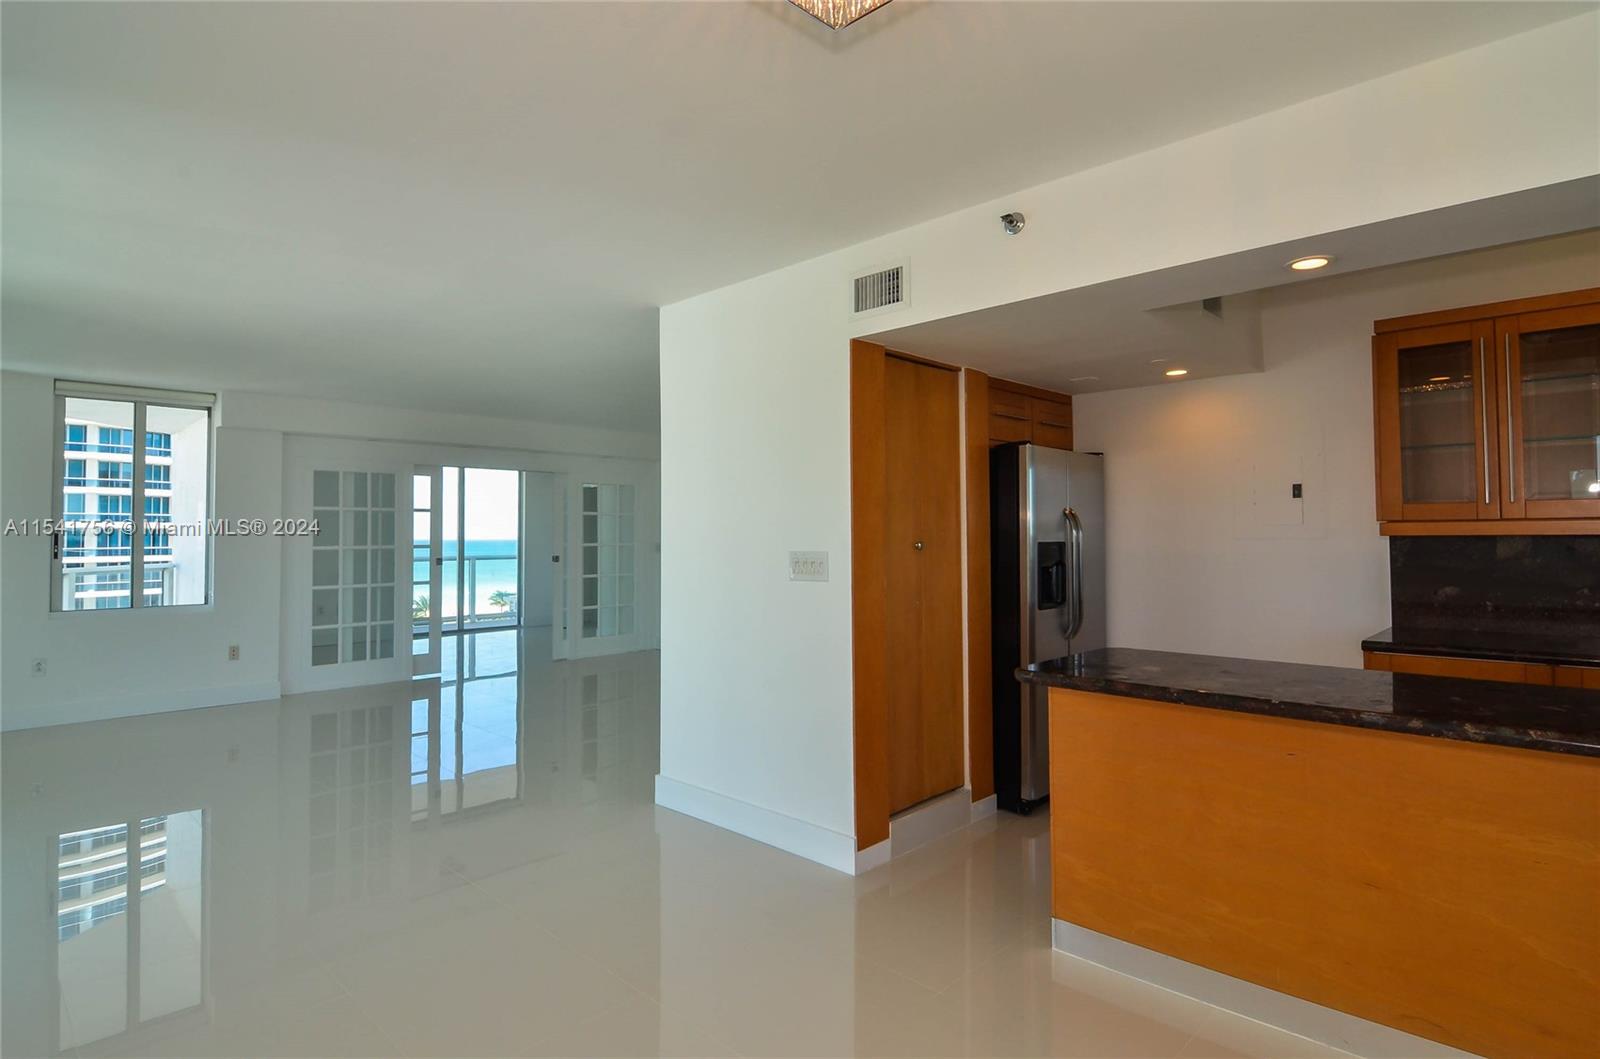 Rental Property at 5900 Collins Av Ave 1008, Miami Beach, Miami-Dade County, Florida - Bedrooms: 3 
Bathrooms: 2  - $5,200 MO.